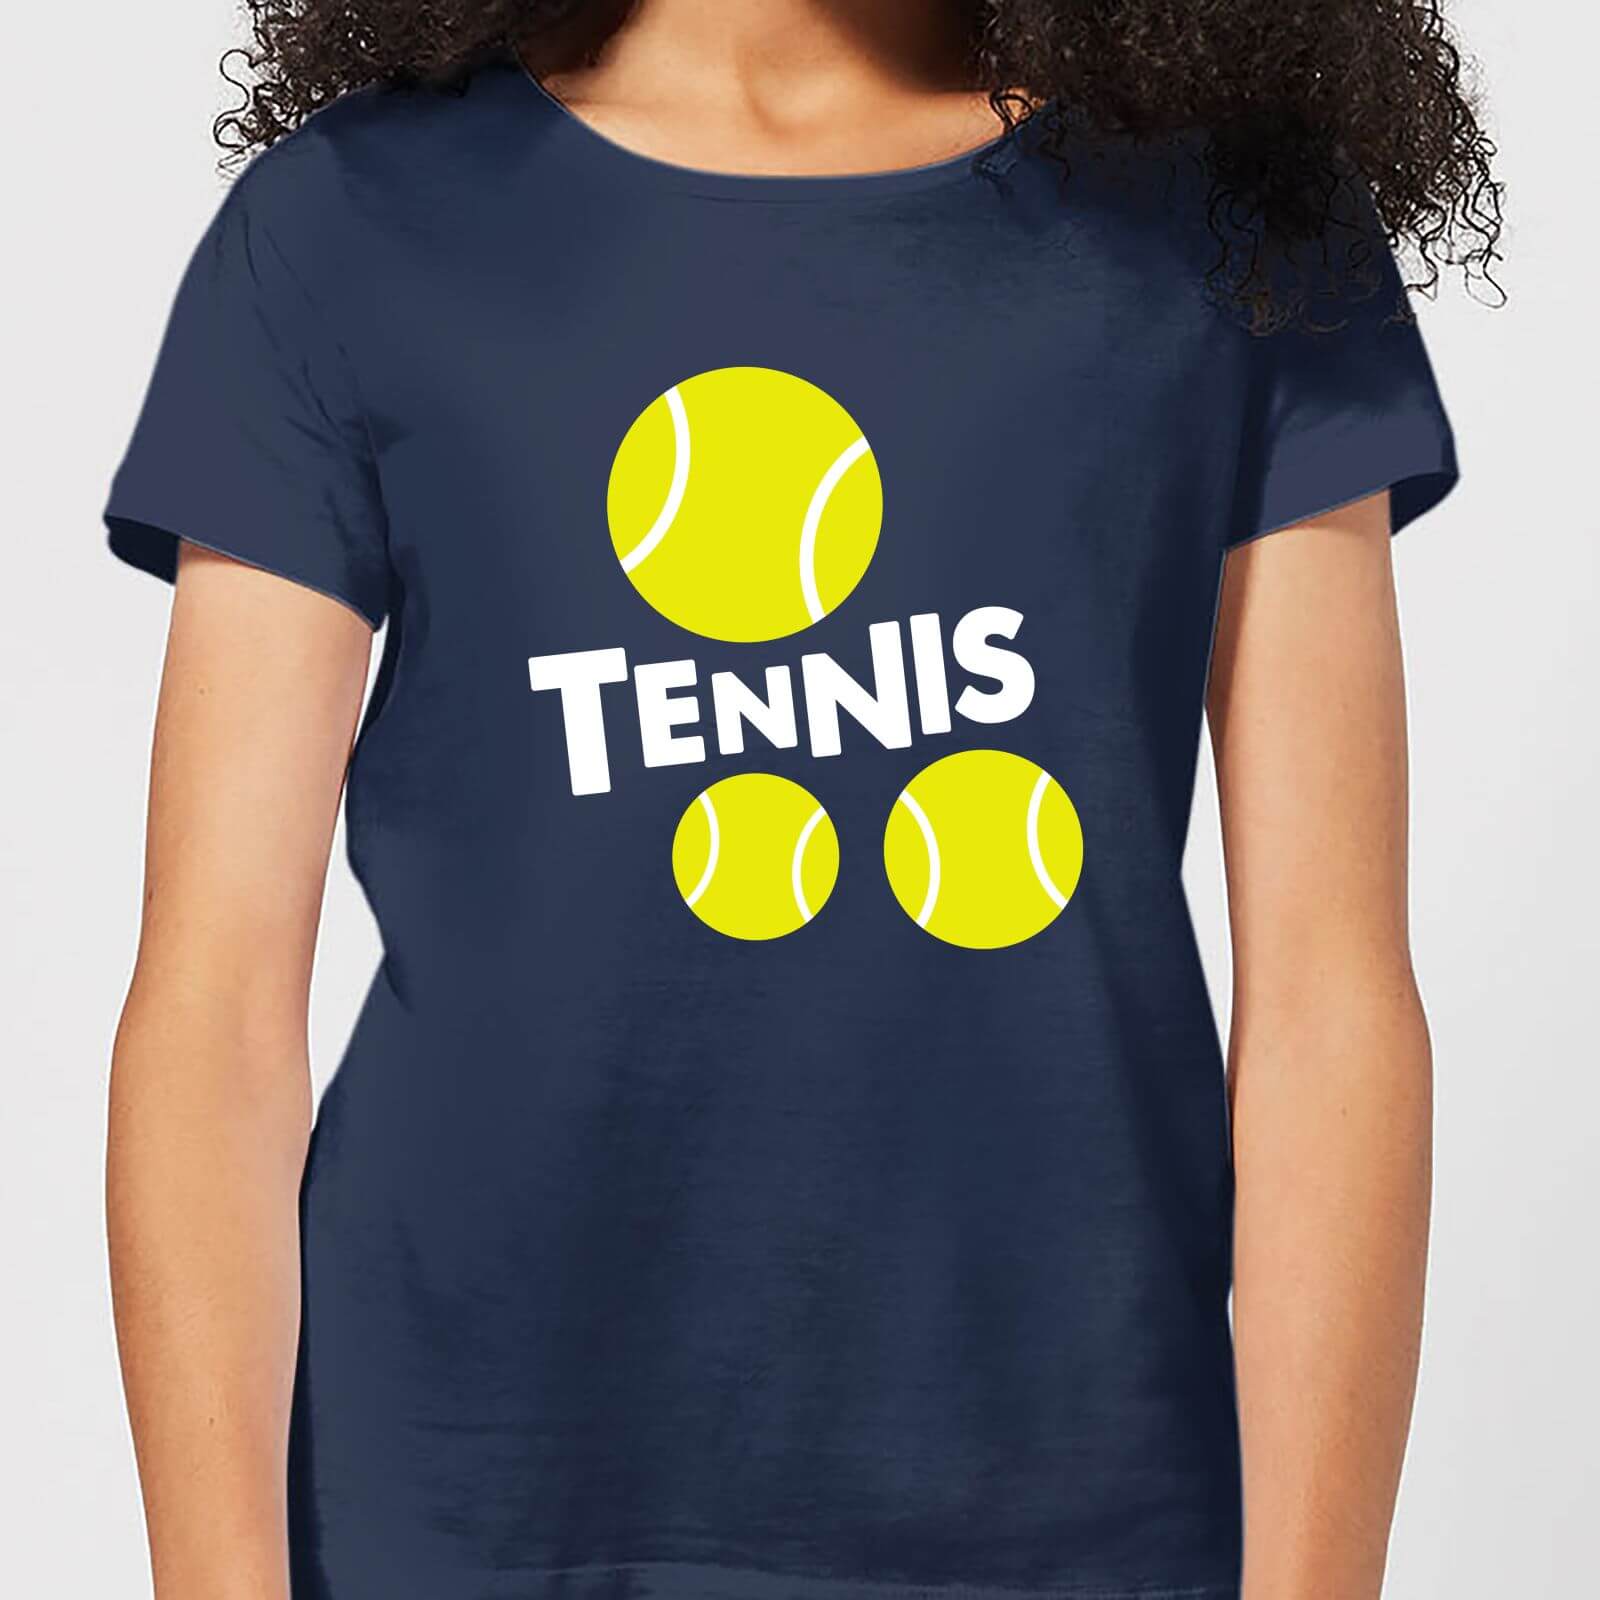 Tennis Balls Womens T Shirt   Navy   XL   Navy